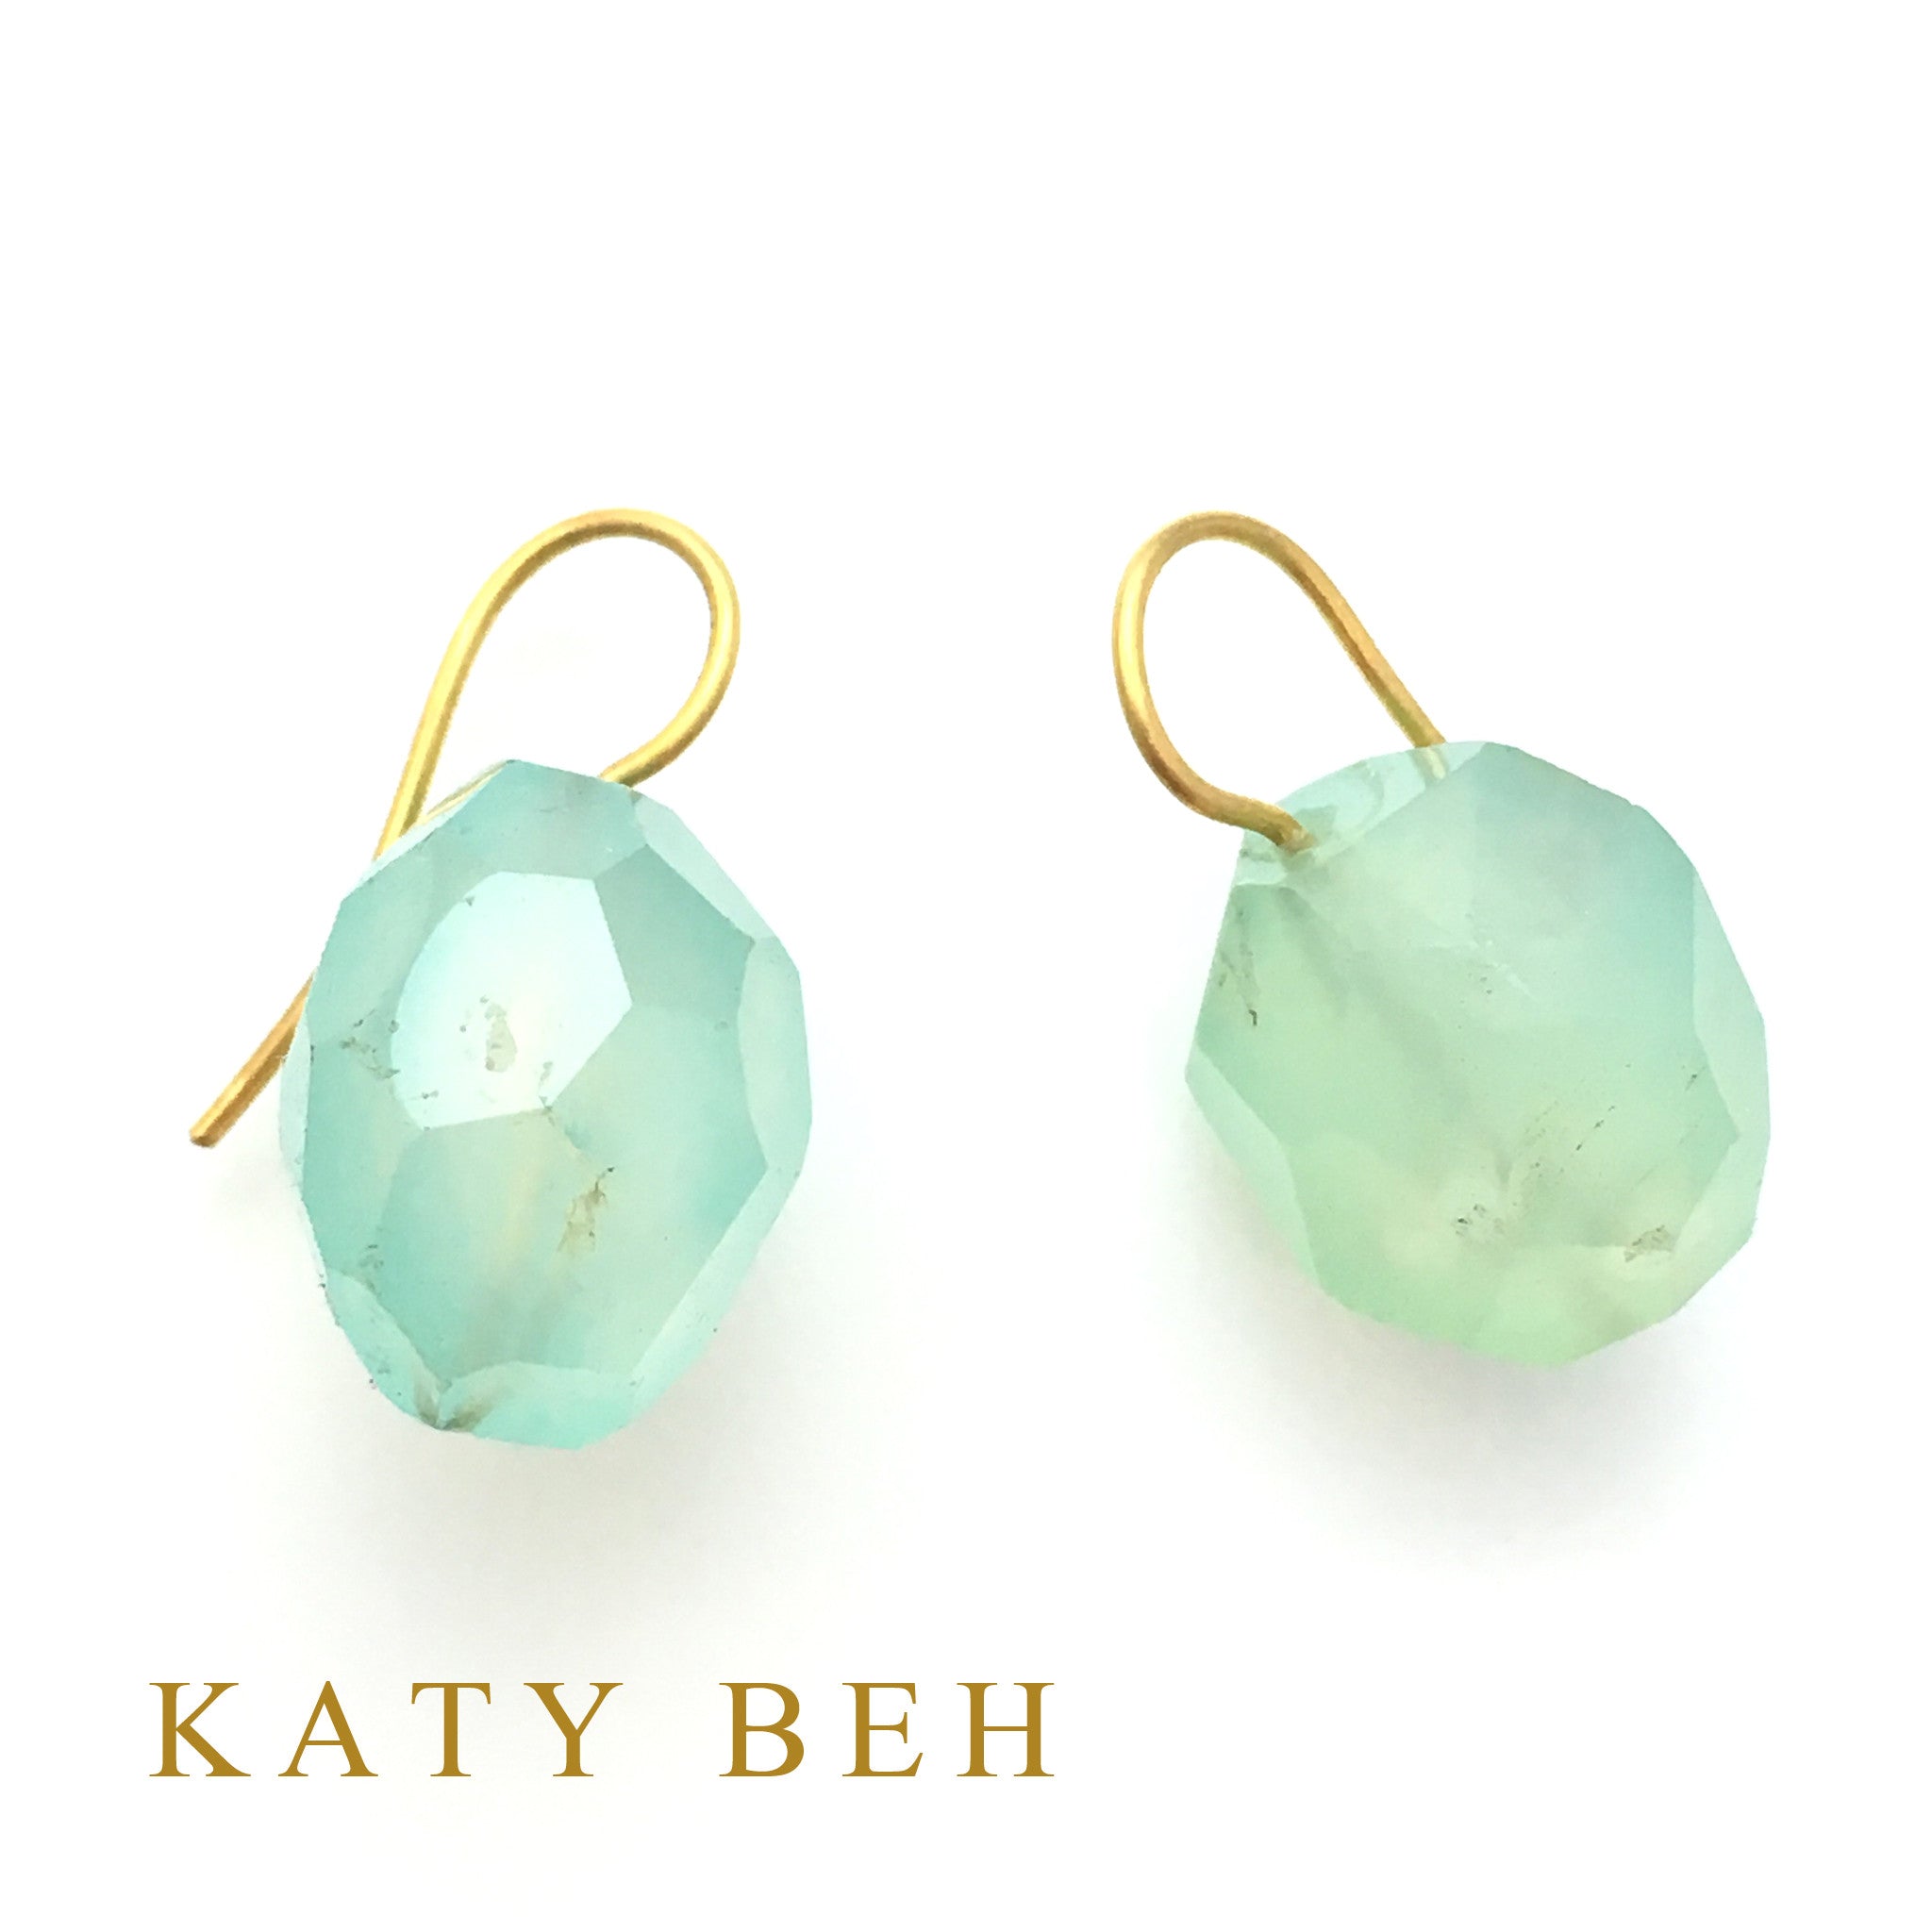 Chloe Earrings - Katy Beh Jewelry